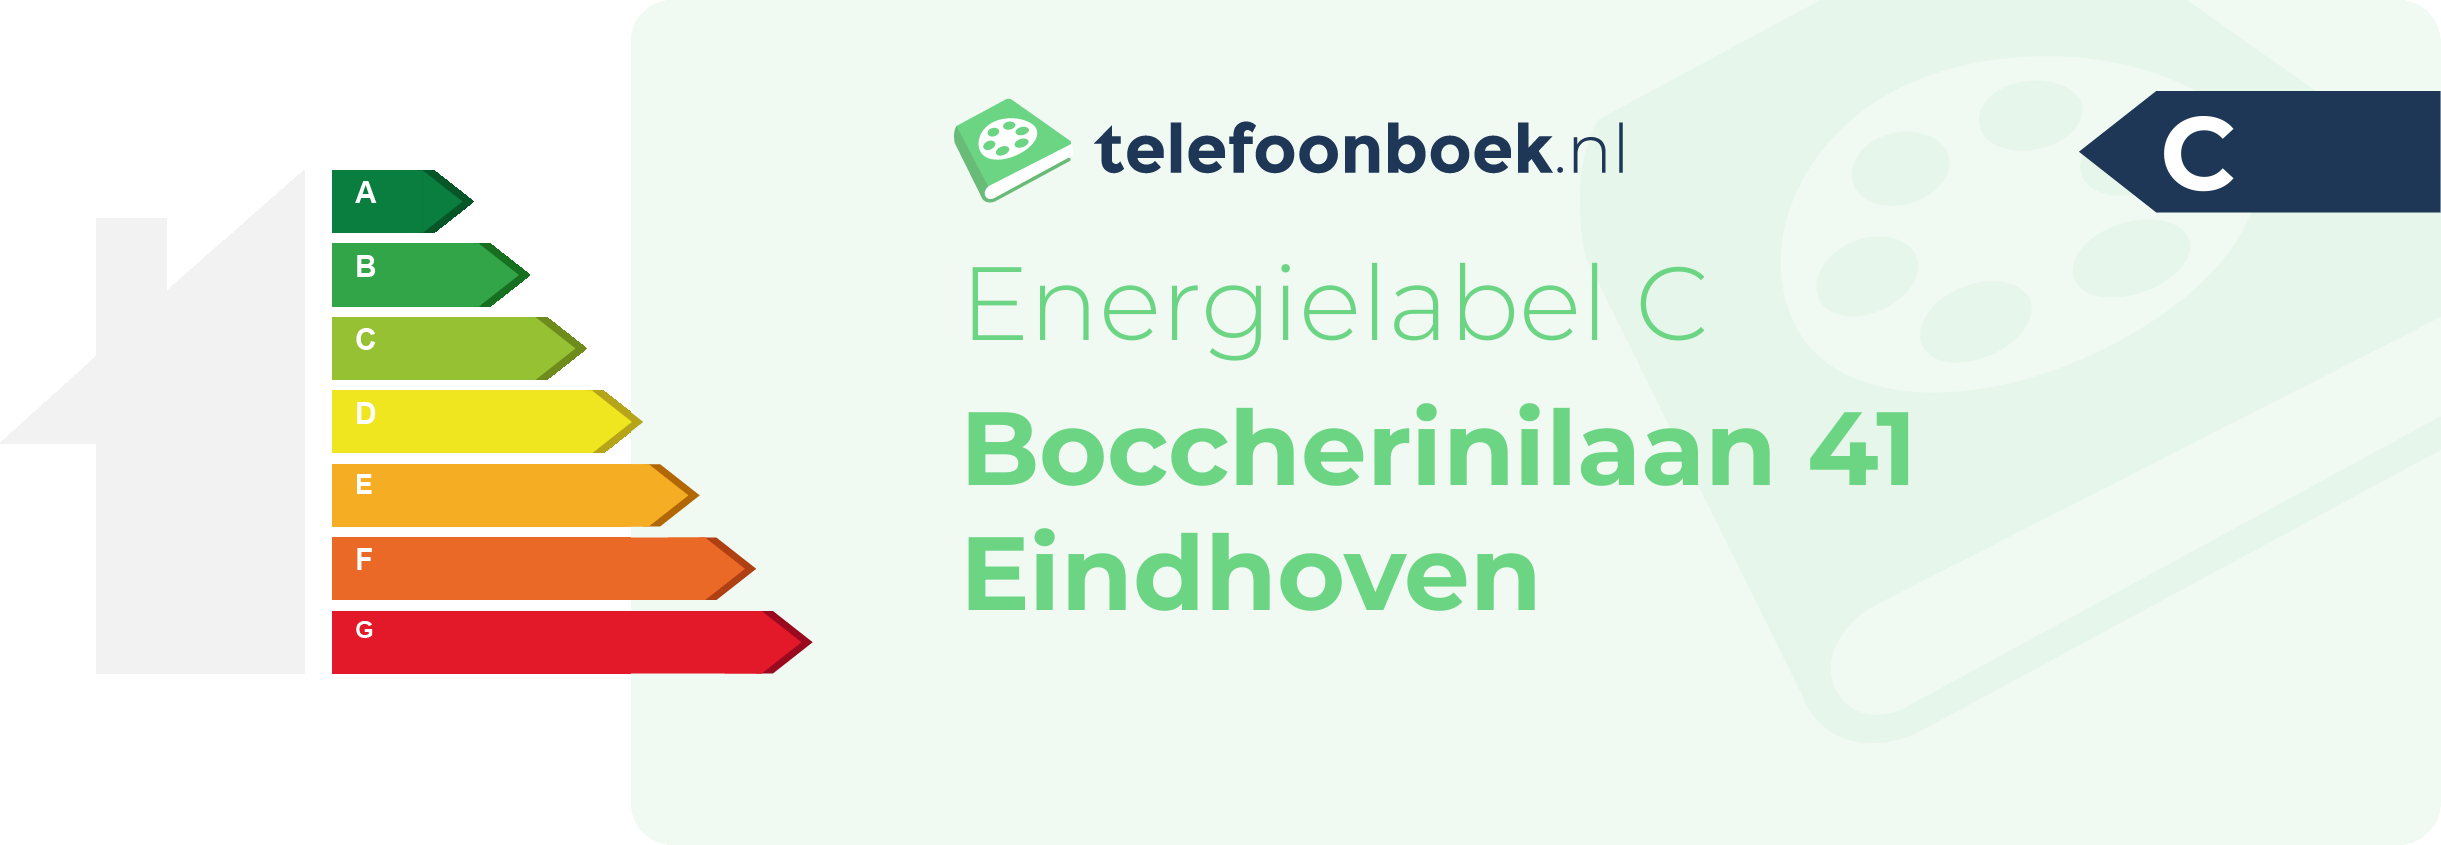 Energielabel Boccherinilaan 41 Eindhoven